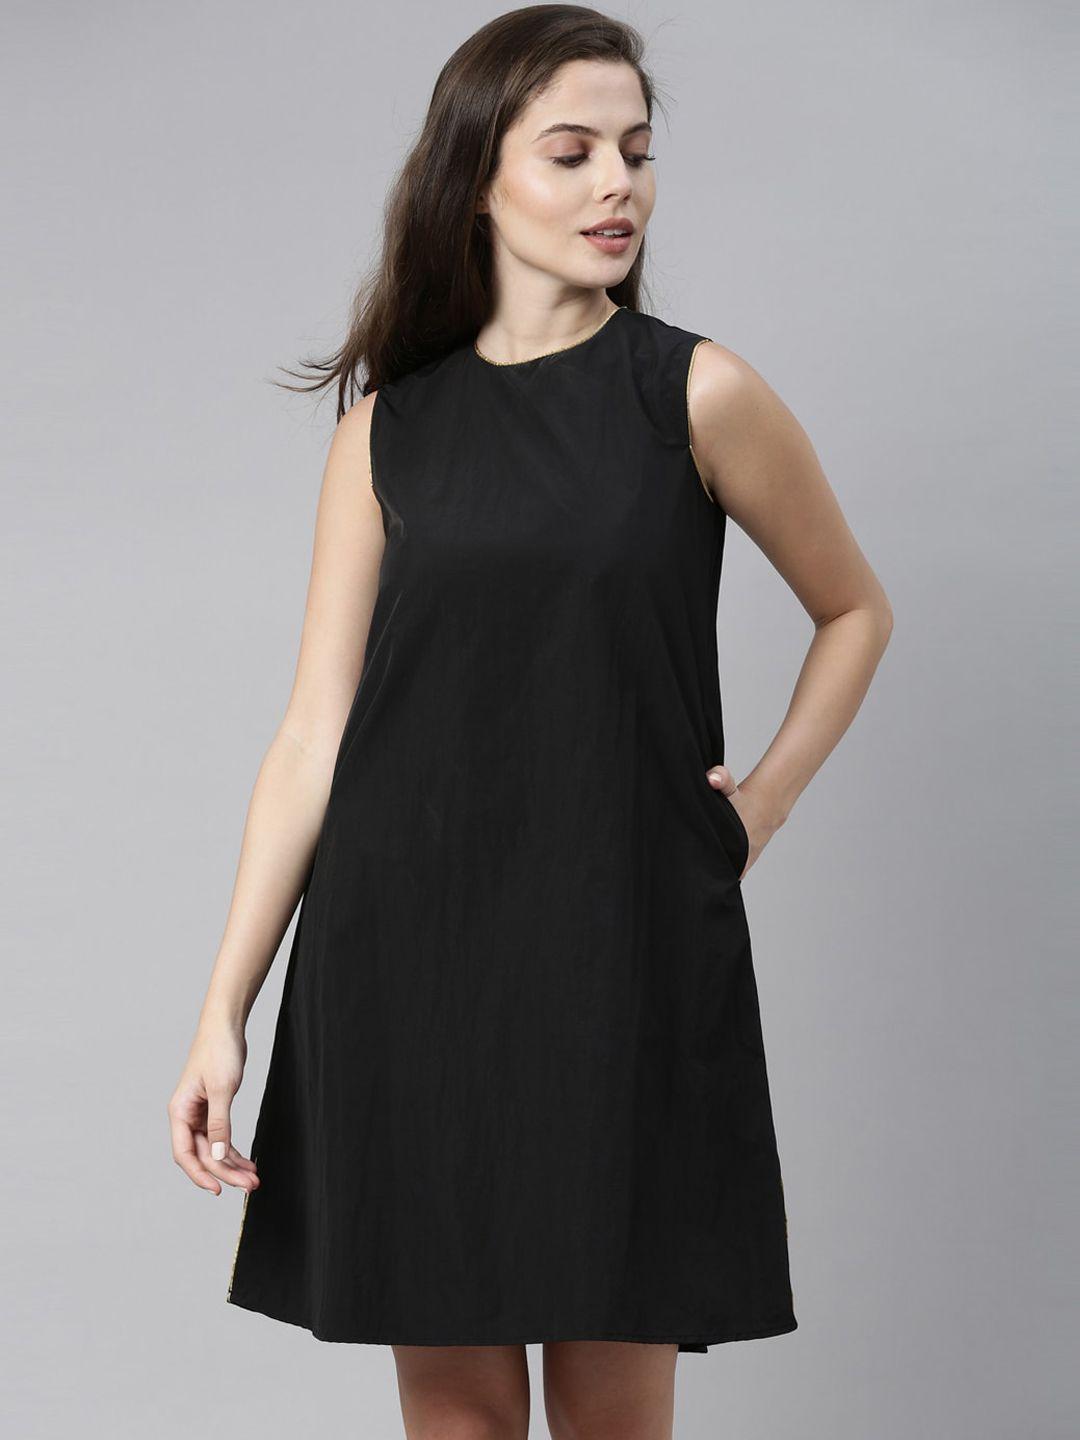 rareism black a-line dress